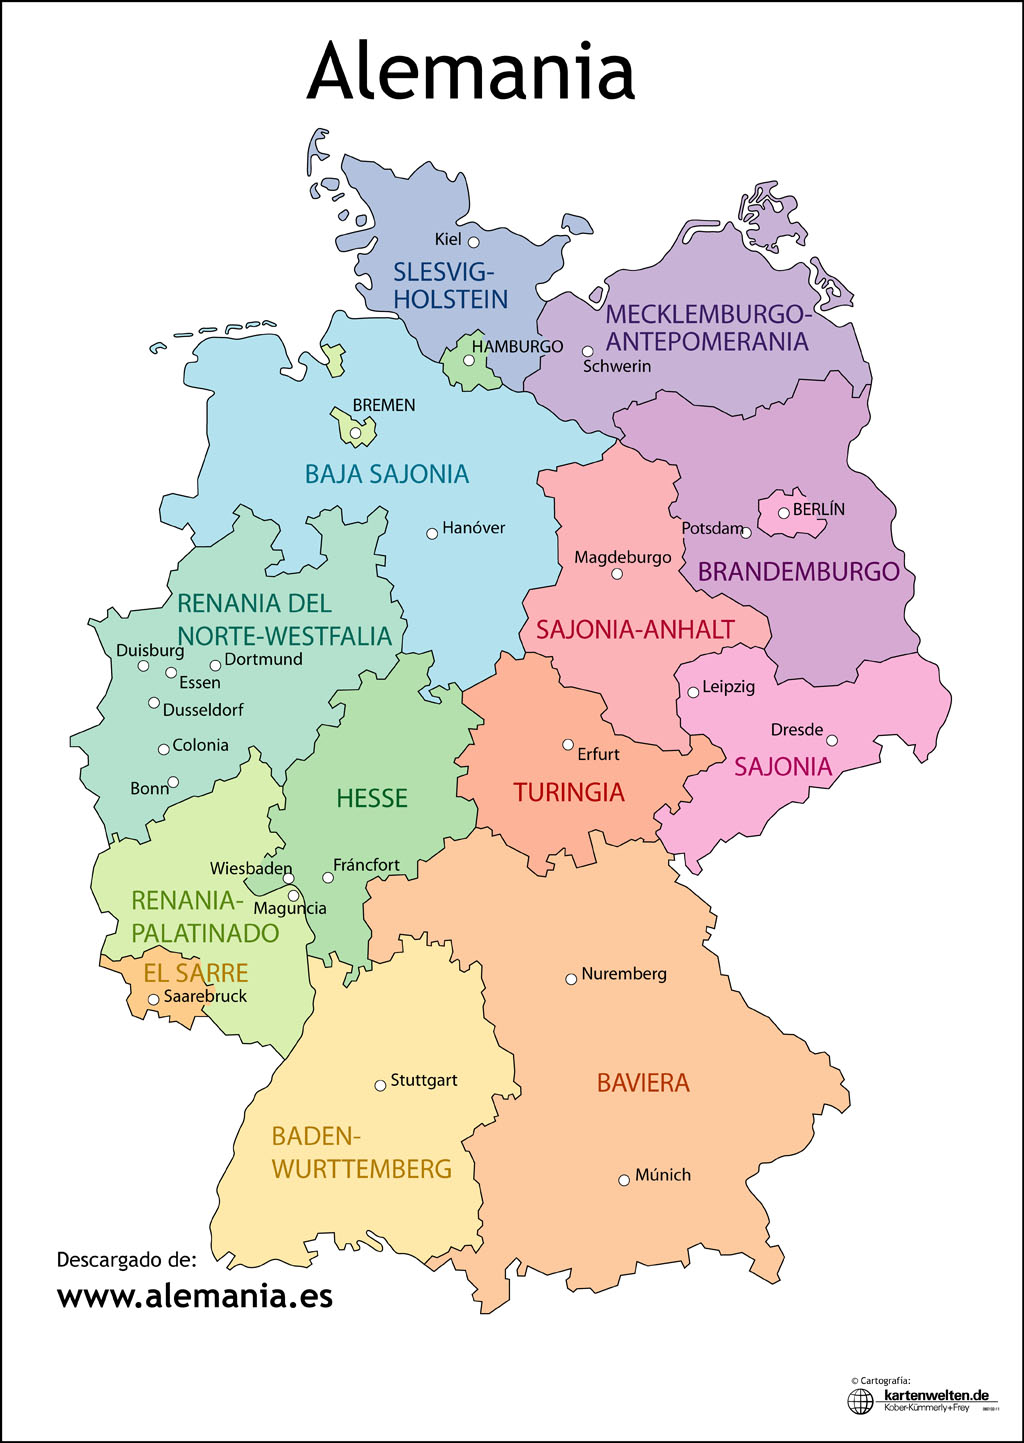 Ciudades Importantes En Alemania Mapa